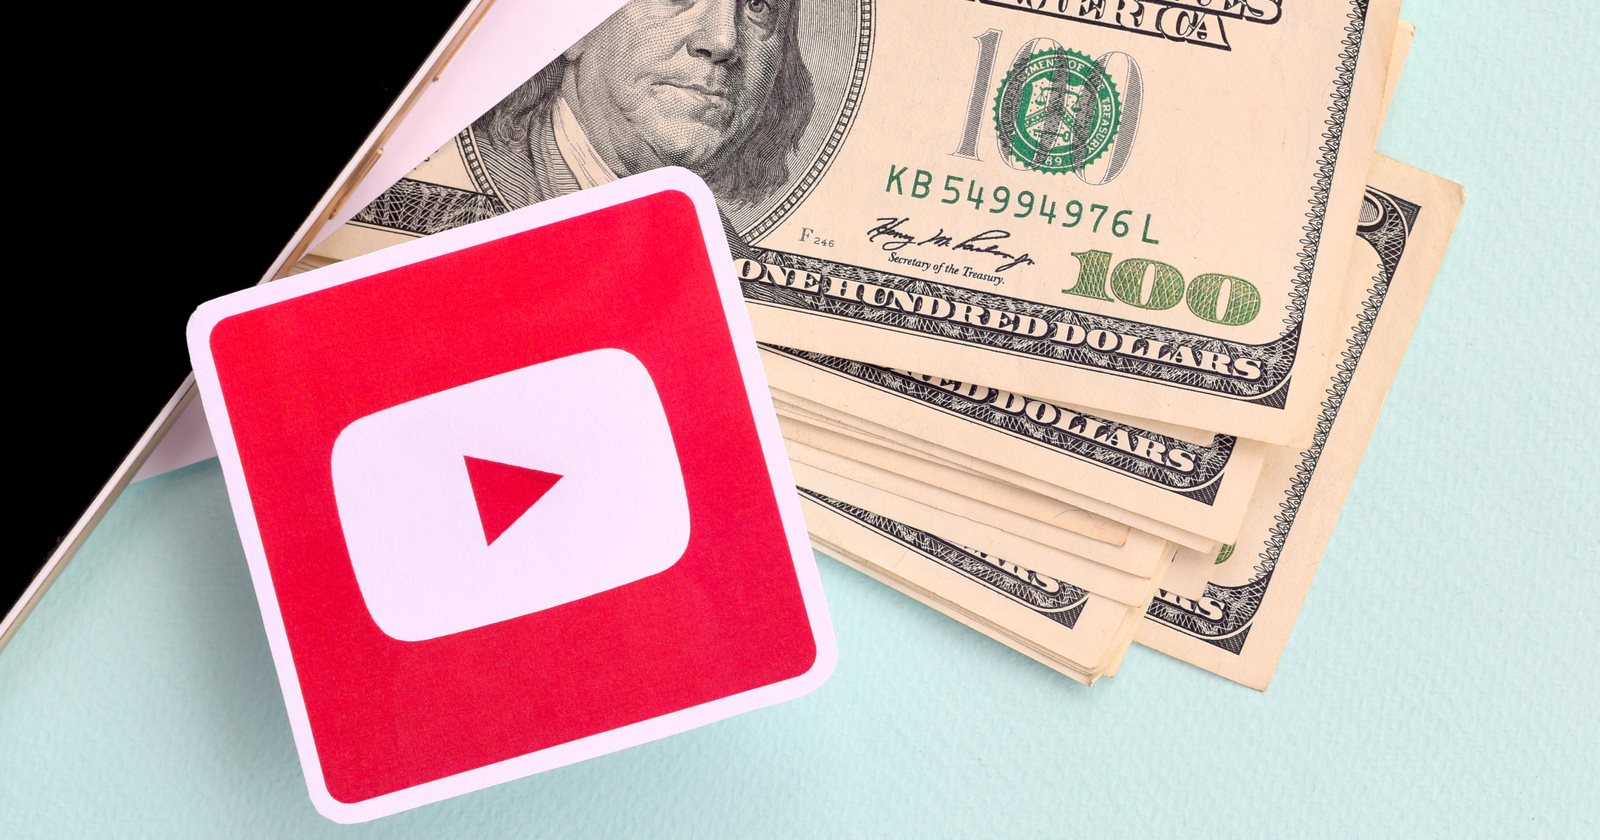 Kiếm tiền từ YouTube kiểu “hướng nội”, thu gần 120 triệu đồng/tháng mà không cần lộ mặt - Ảnh 1.